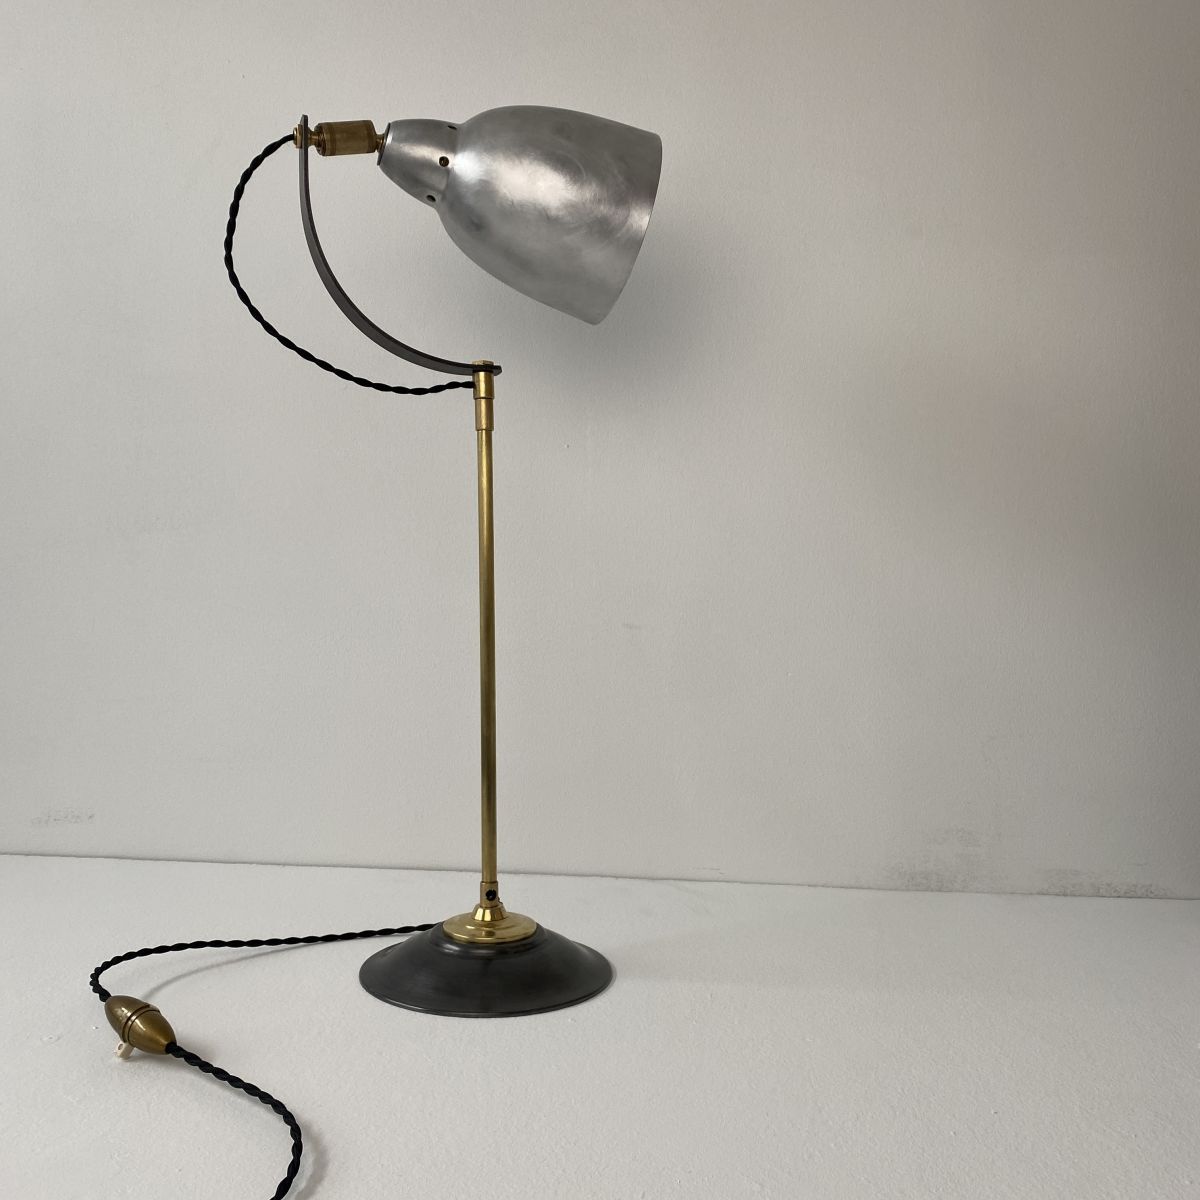 ANCIENNE LAMPE D'ATELIER INDUSTRIEL 1950 – Luckyfind